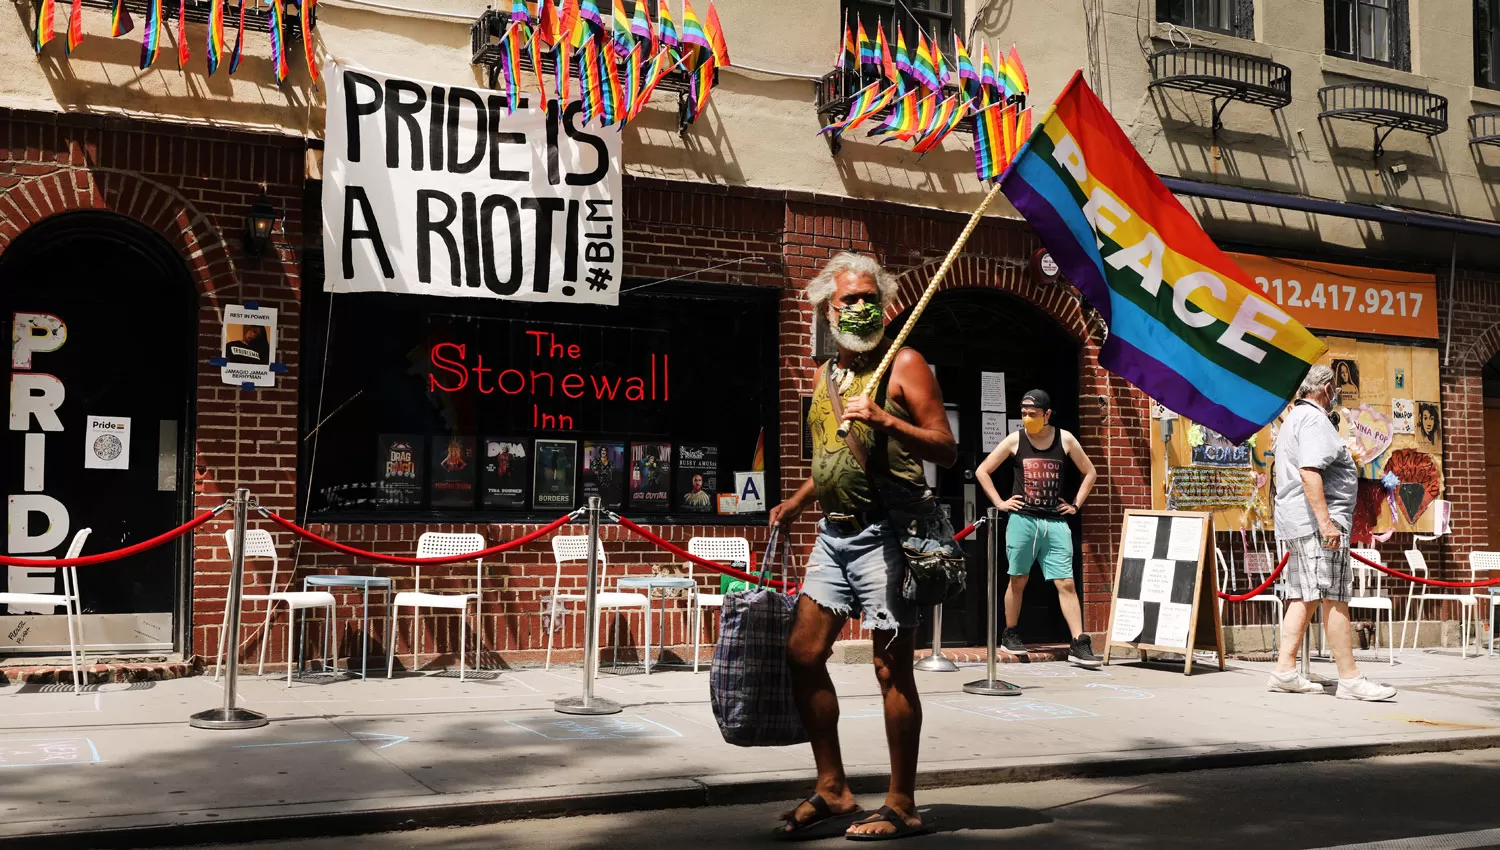 EL PRINCIPIO. En el pub Stonewall ocurrió la revuelta de 1969, un hito en la lucha por los derechos LGBT.